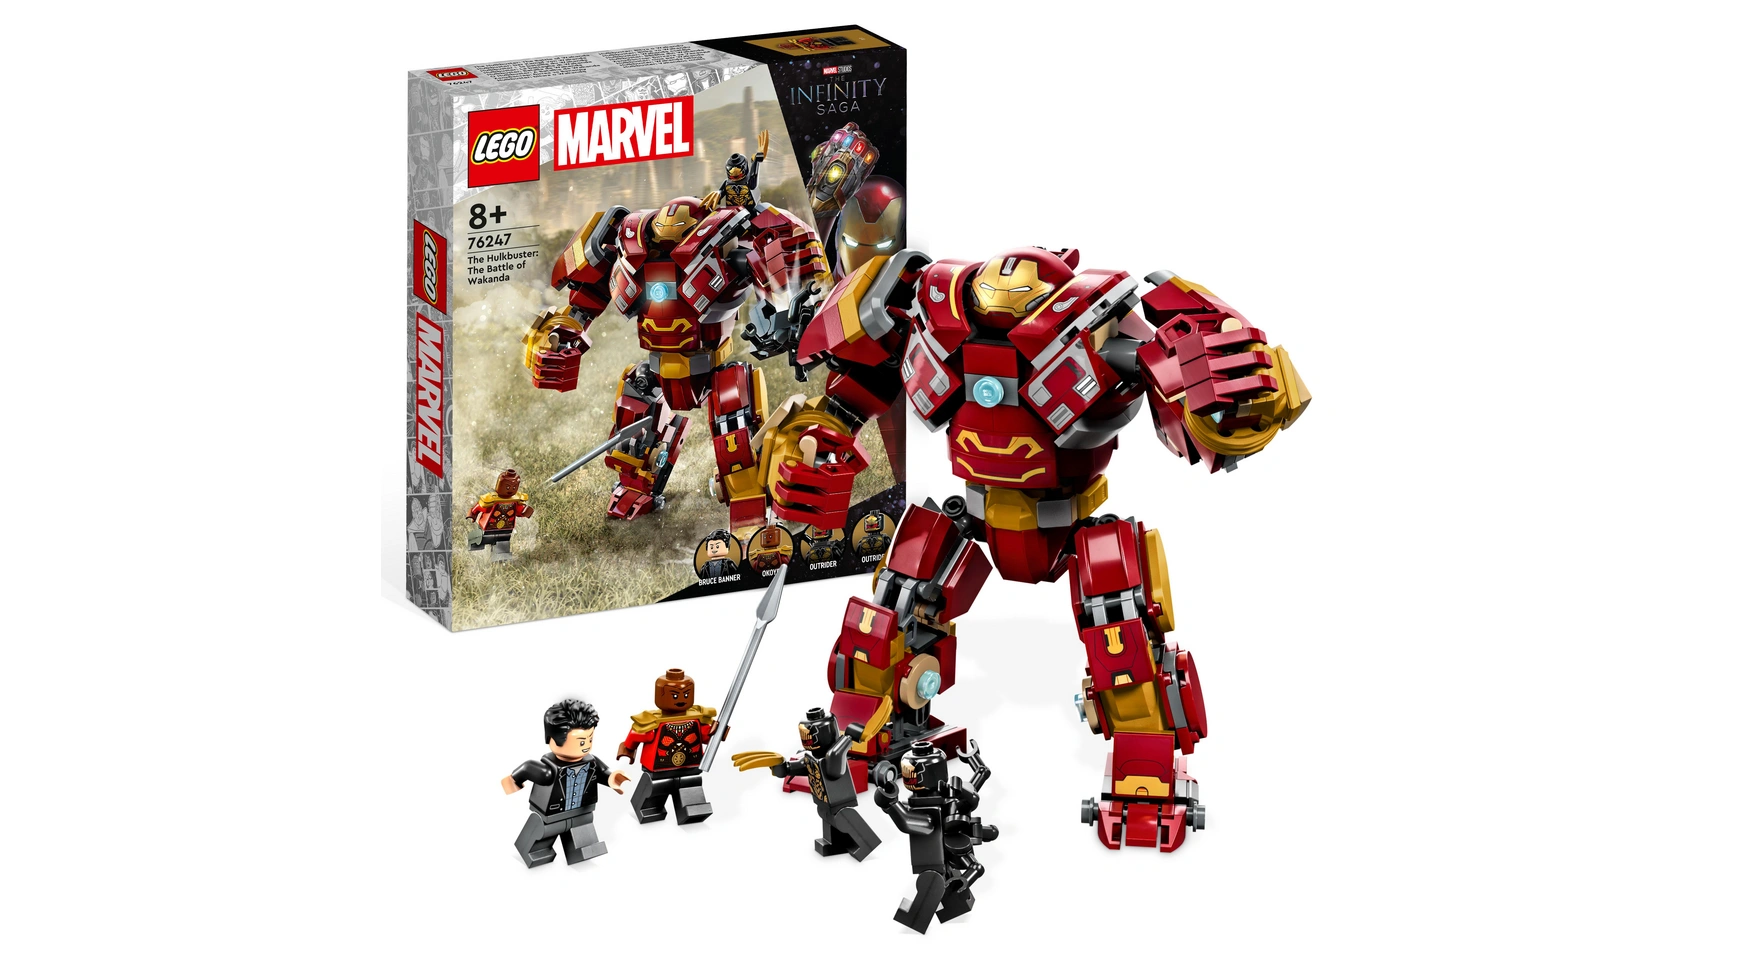 Lego Marvel Фигурка Халкбастер: Битва за Ваканду lego marvel the hulkbuster битва за ваканду 76247 набор строительных игрушек lego